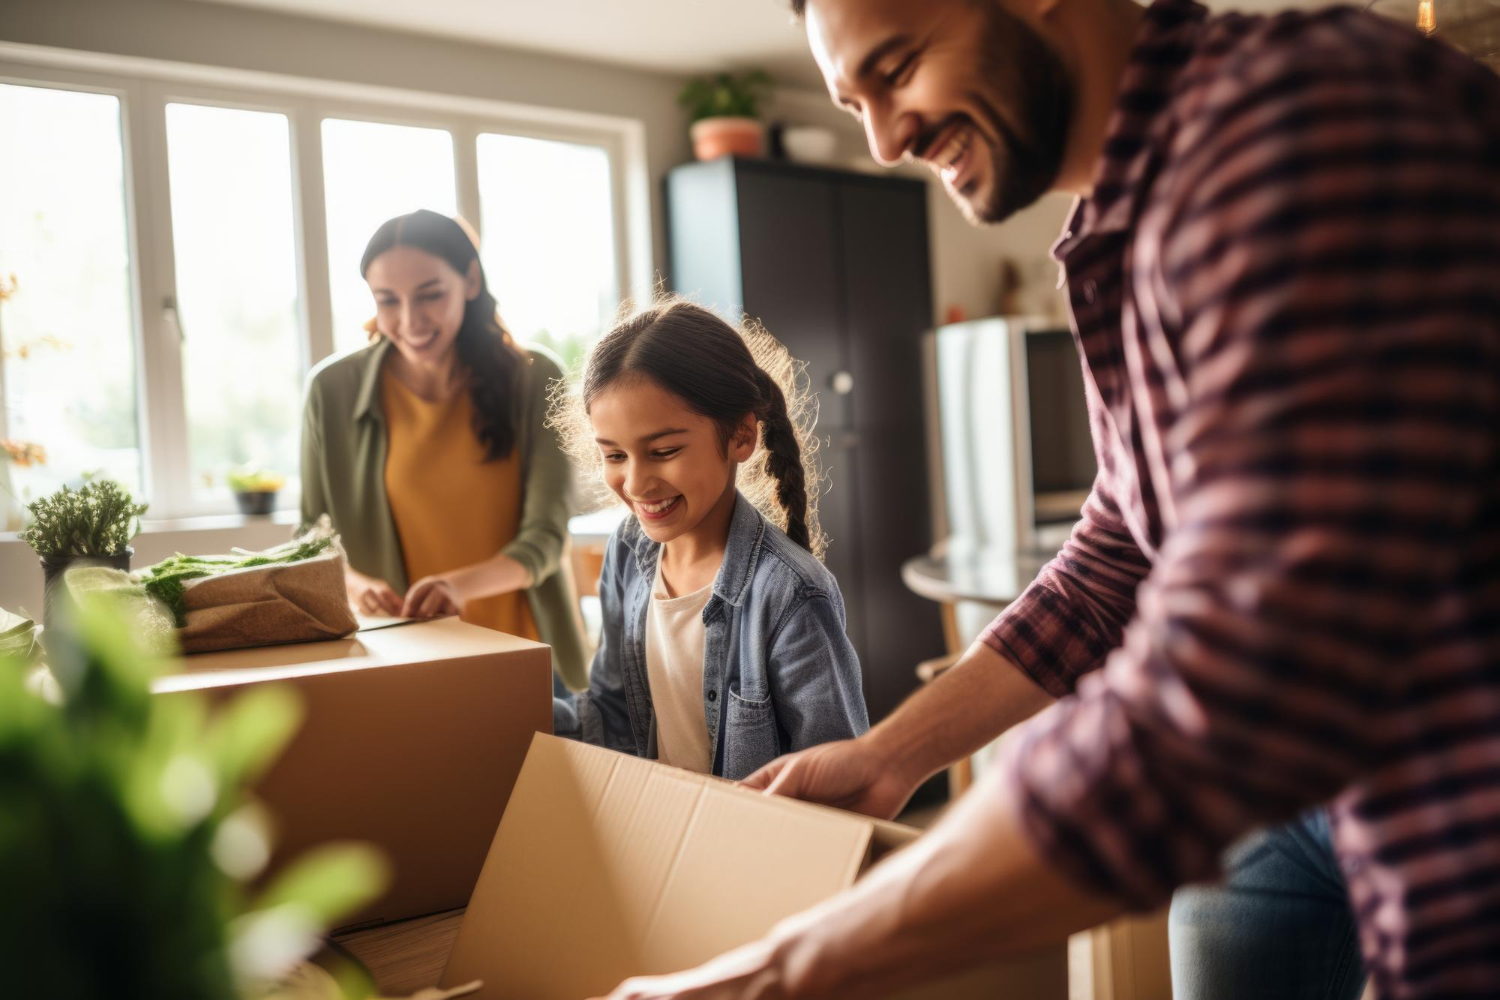 "Image illustrant une famille heureuse emballant des cartons pour déménager, montrant le processus de déménagement dans un contexte de garde alternée."